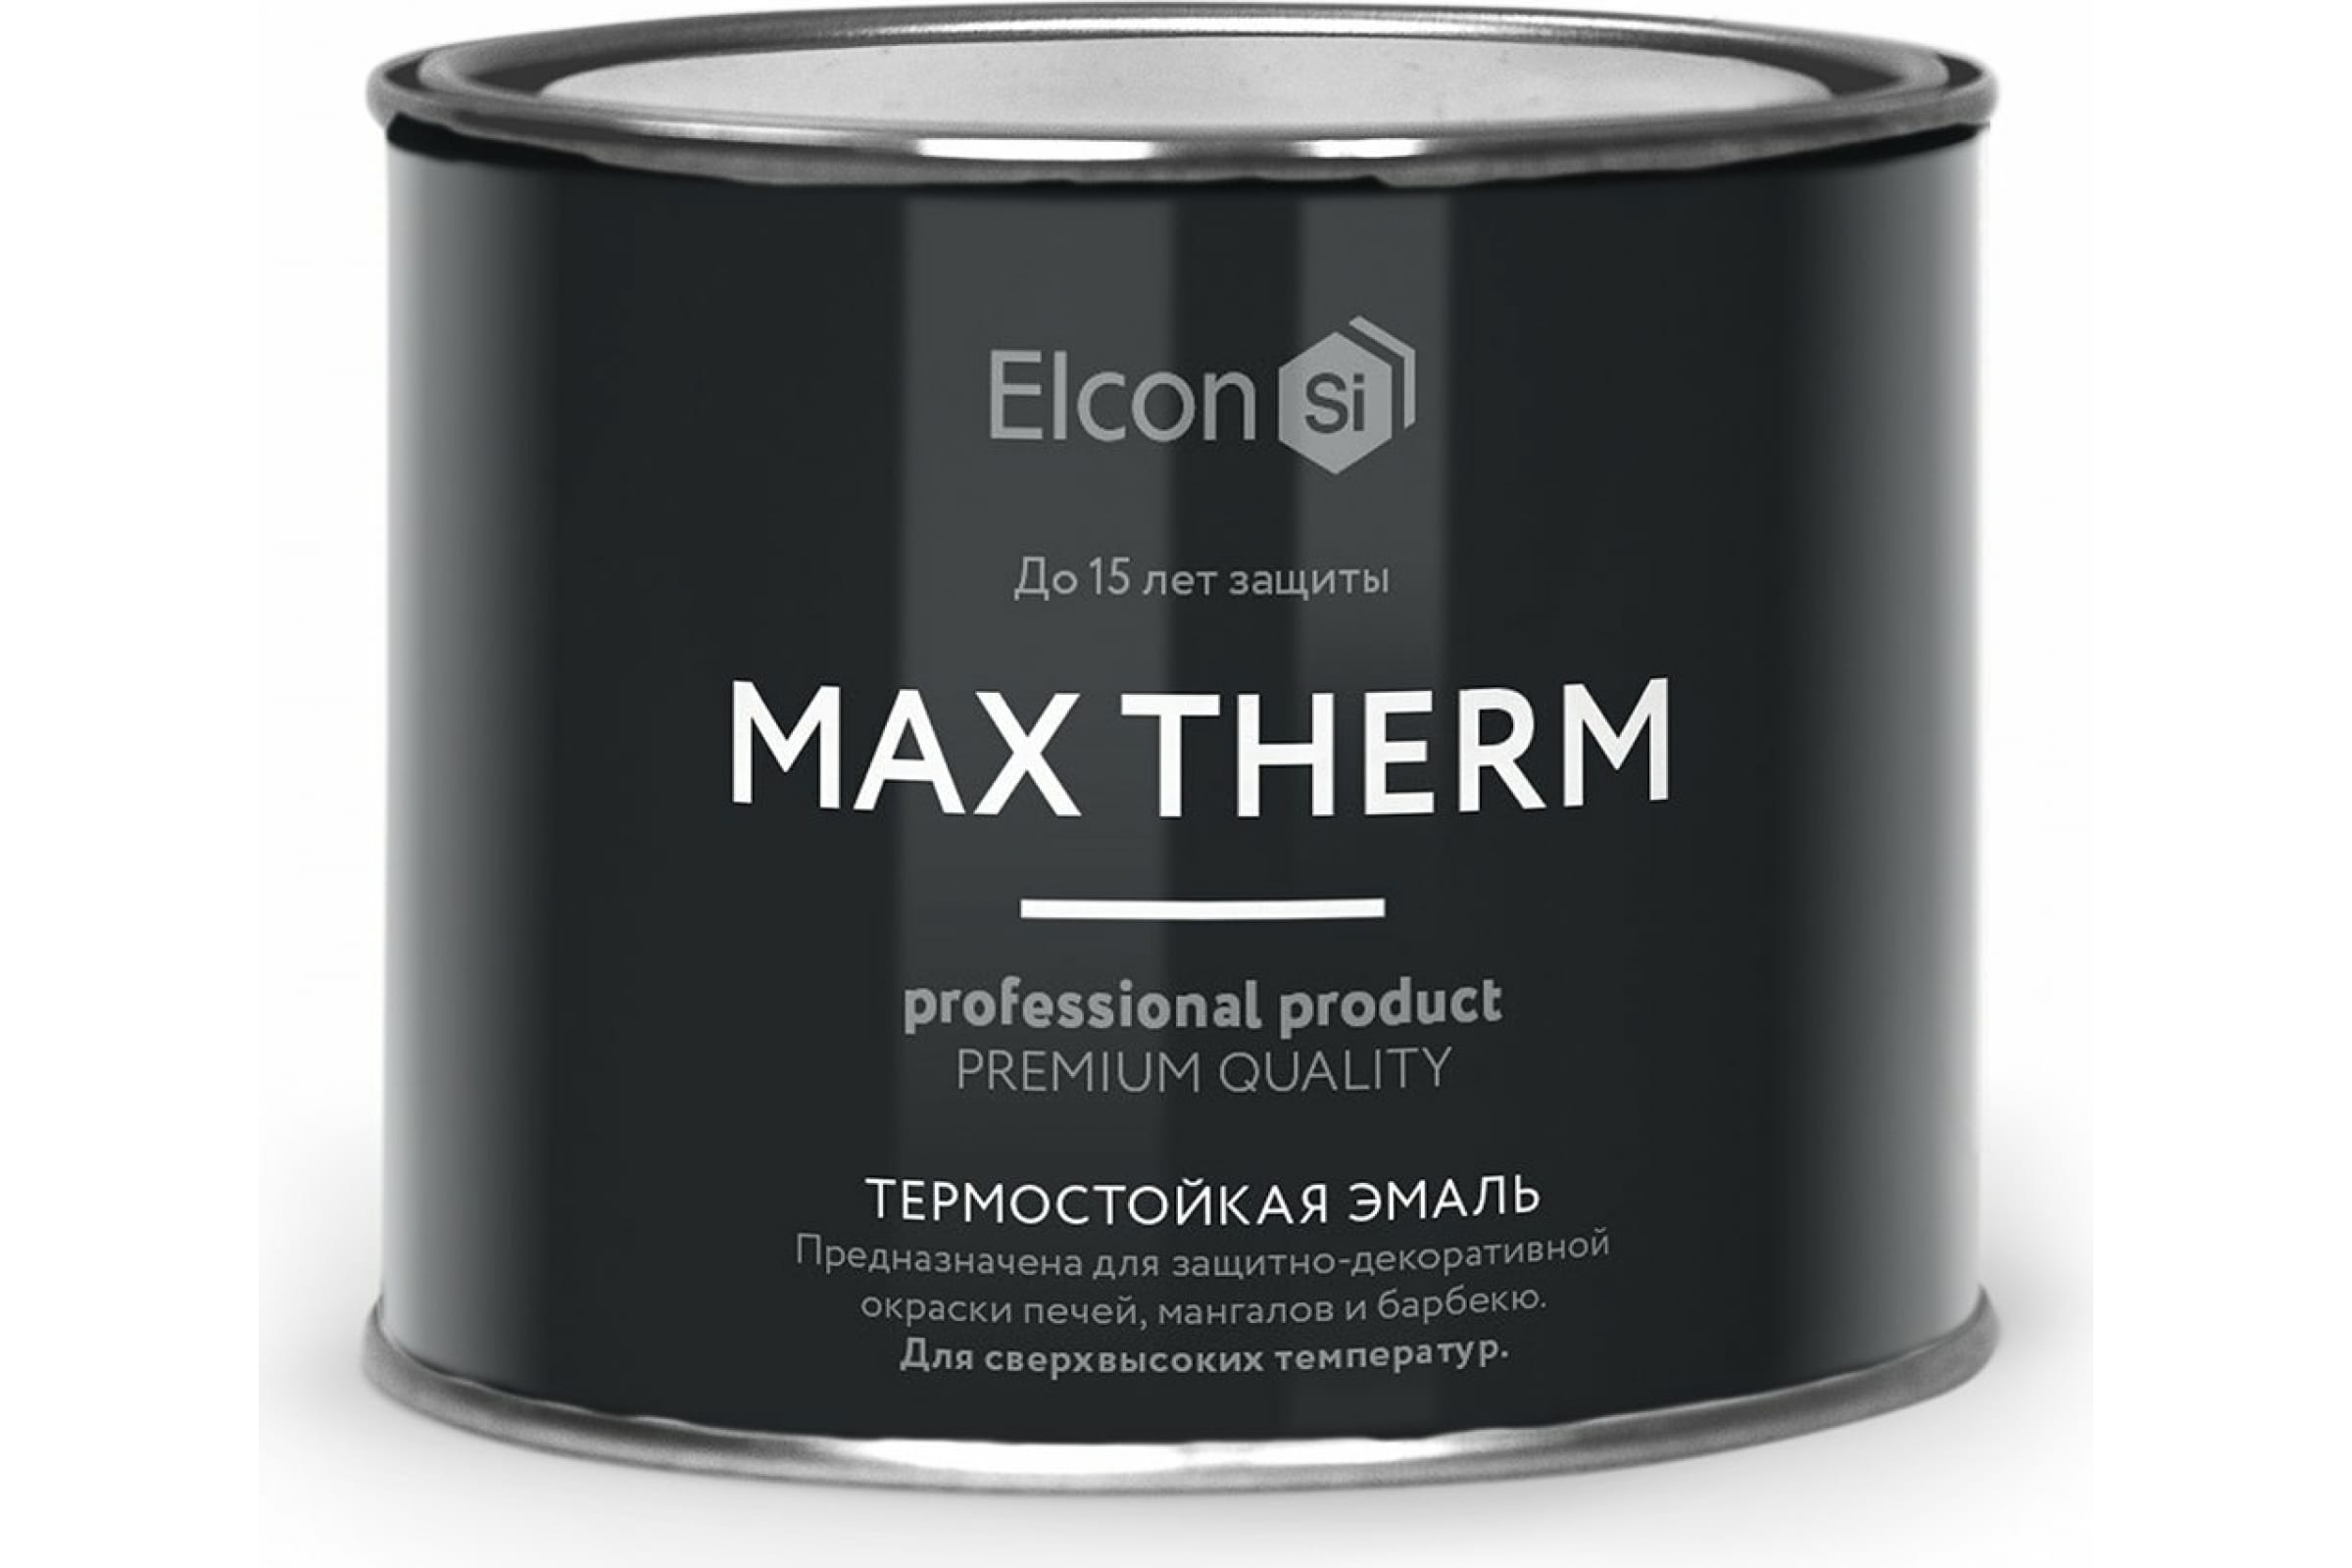 Термостойкая антикоррозионная эмаль Elcon Max Therm до 400 градусов, 0,4 л, красная термостойкая антикоррозионная эмаль elcon max therm до 400 градусов 0 4 л ярко красная